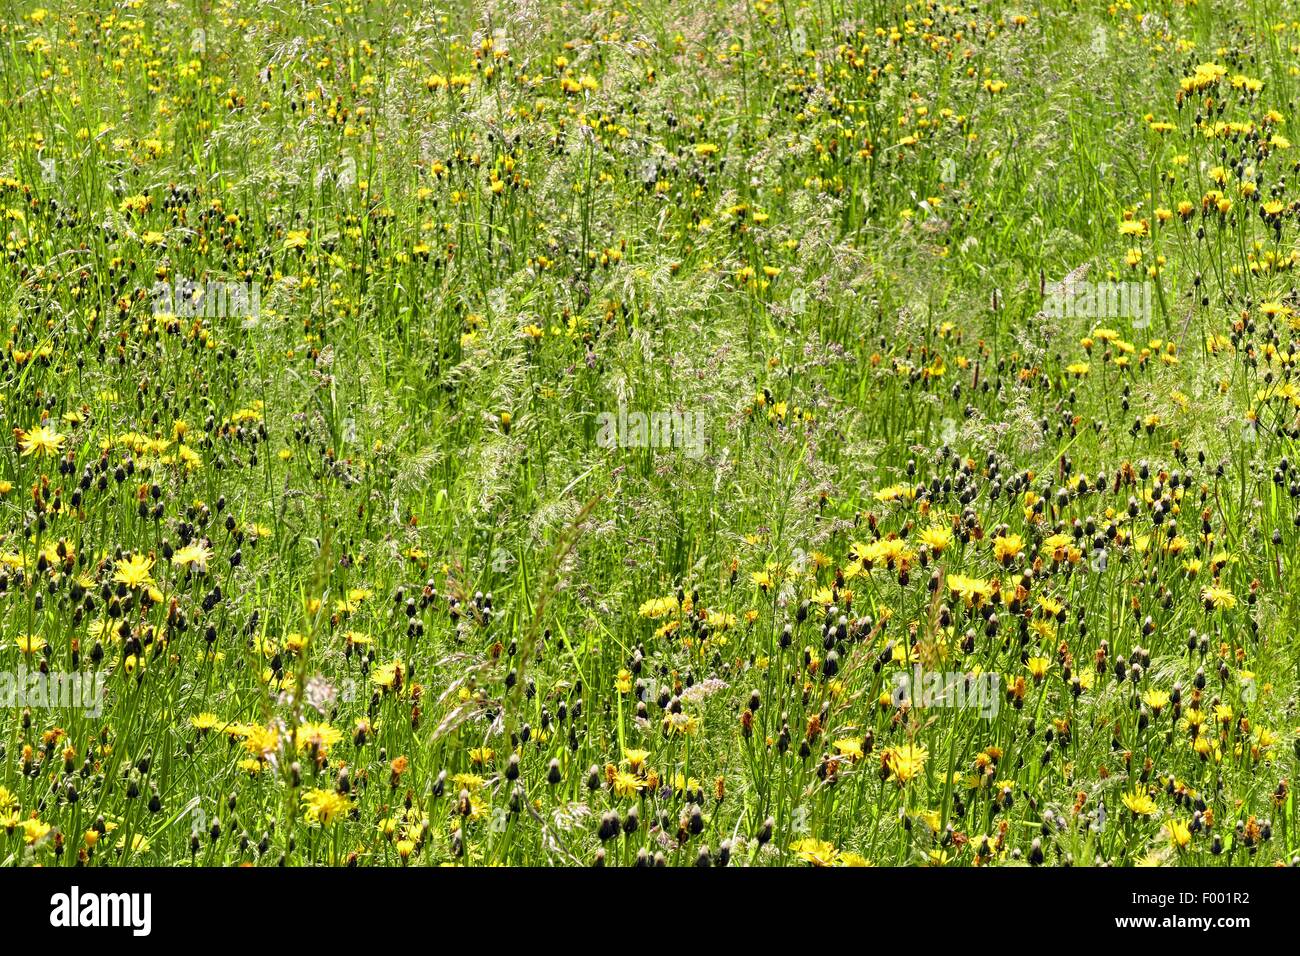 Rough hawk's-beard (Crepis biennis), blooming in a meadow, Germany Stock Photo